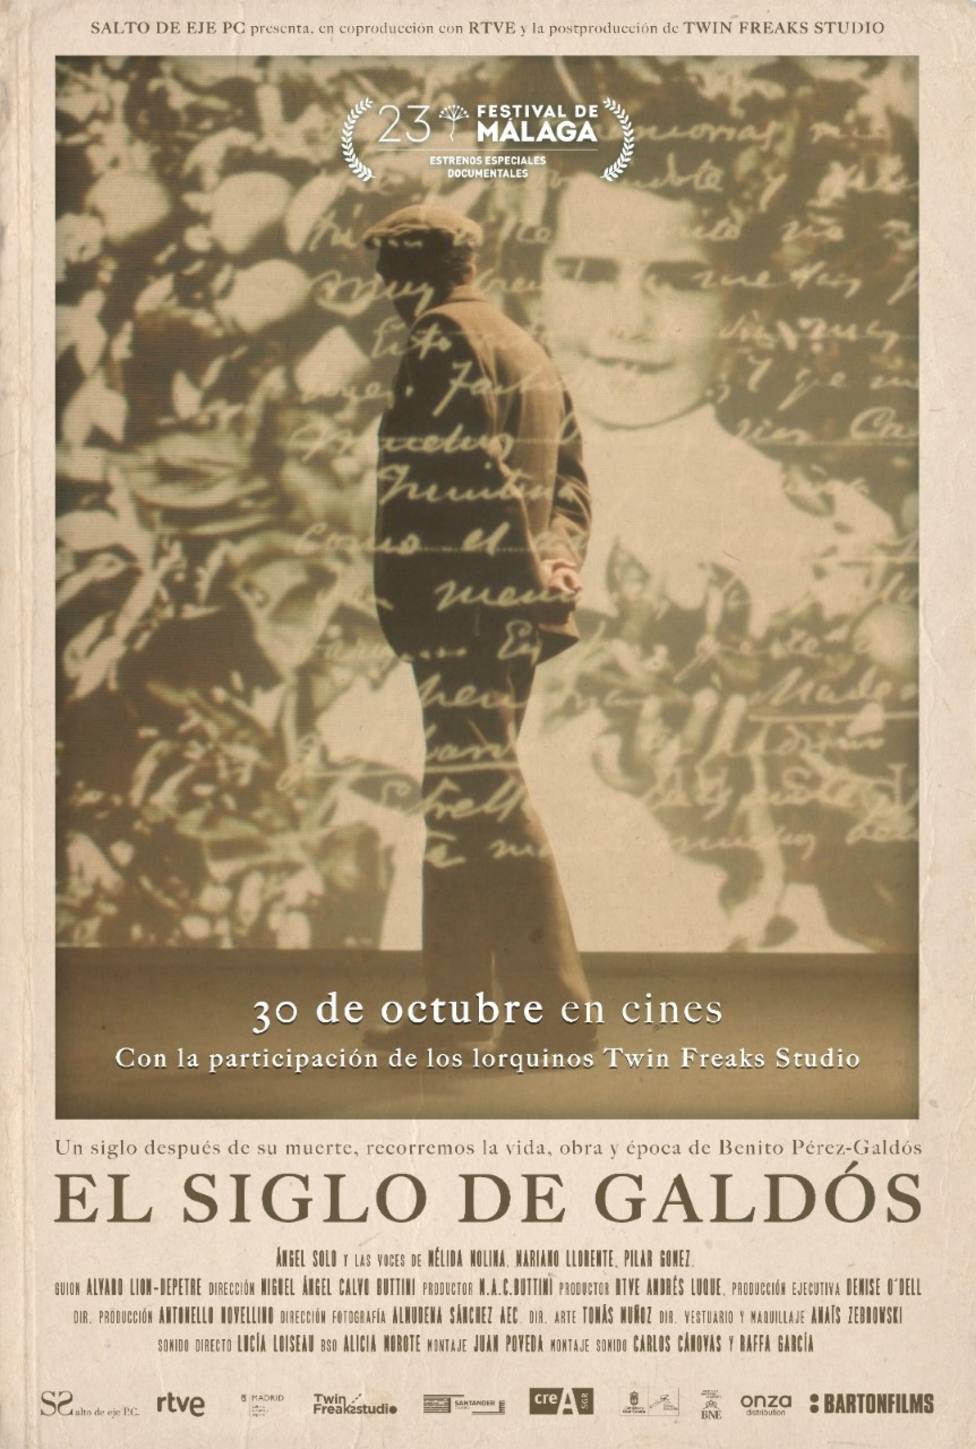 Los lorquinos Juan y Pedro Poveda presentan la producción de su documental, ‘El siglo de Galdós’